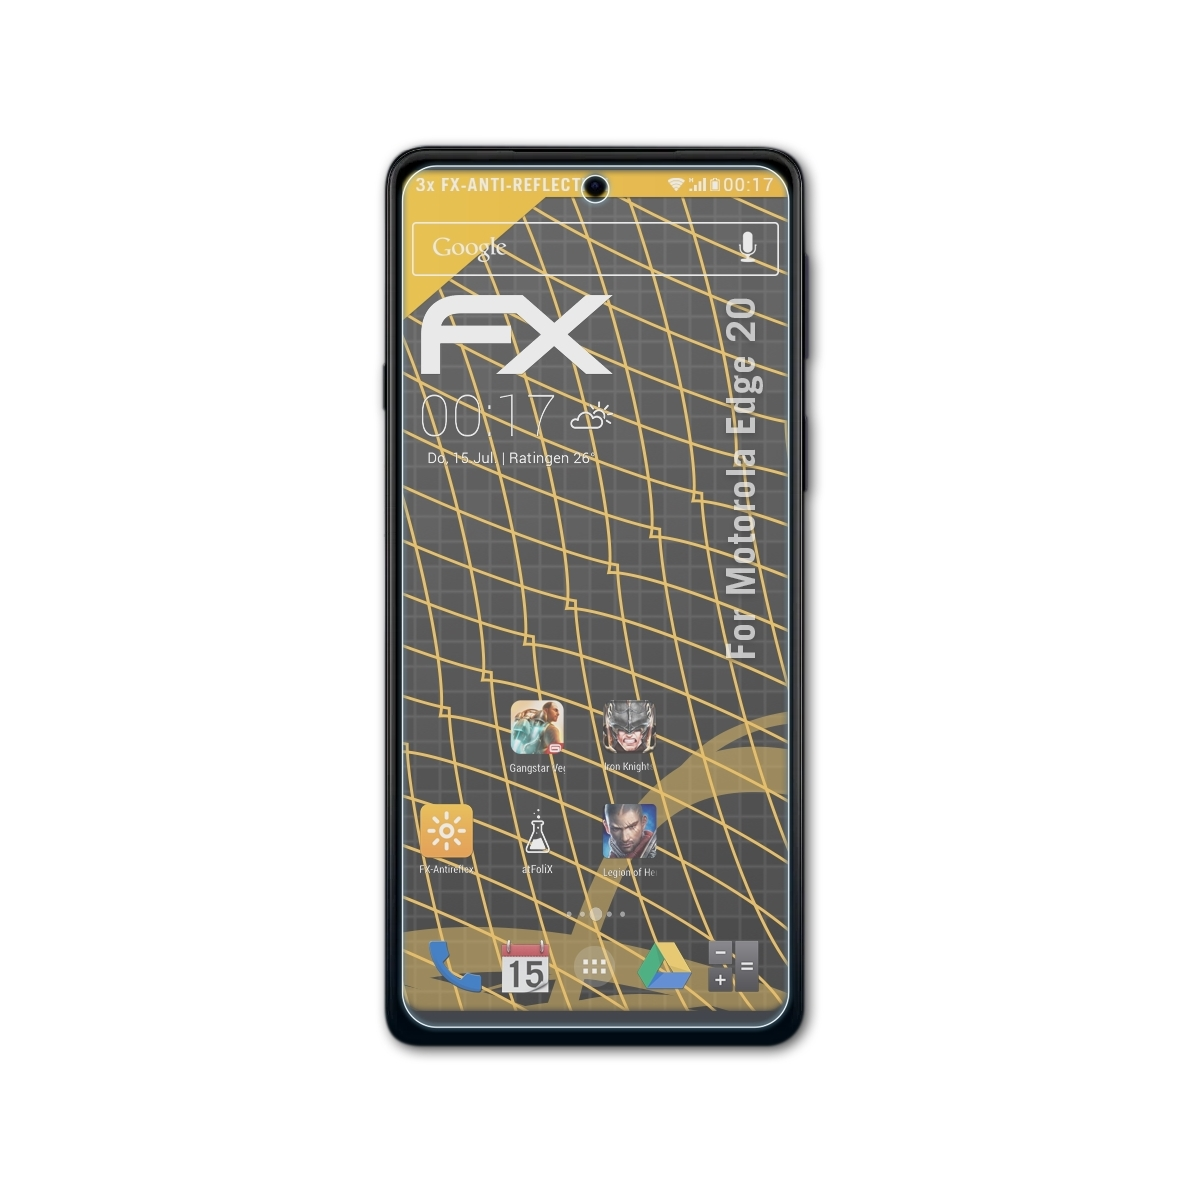 Displayschutz(für Edge Motorola 20) FX-Antireflex ATFOLIX 3x